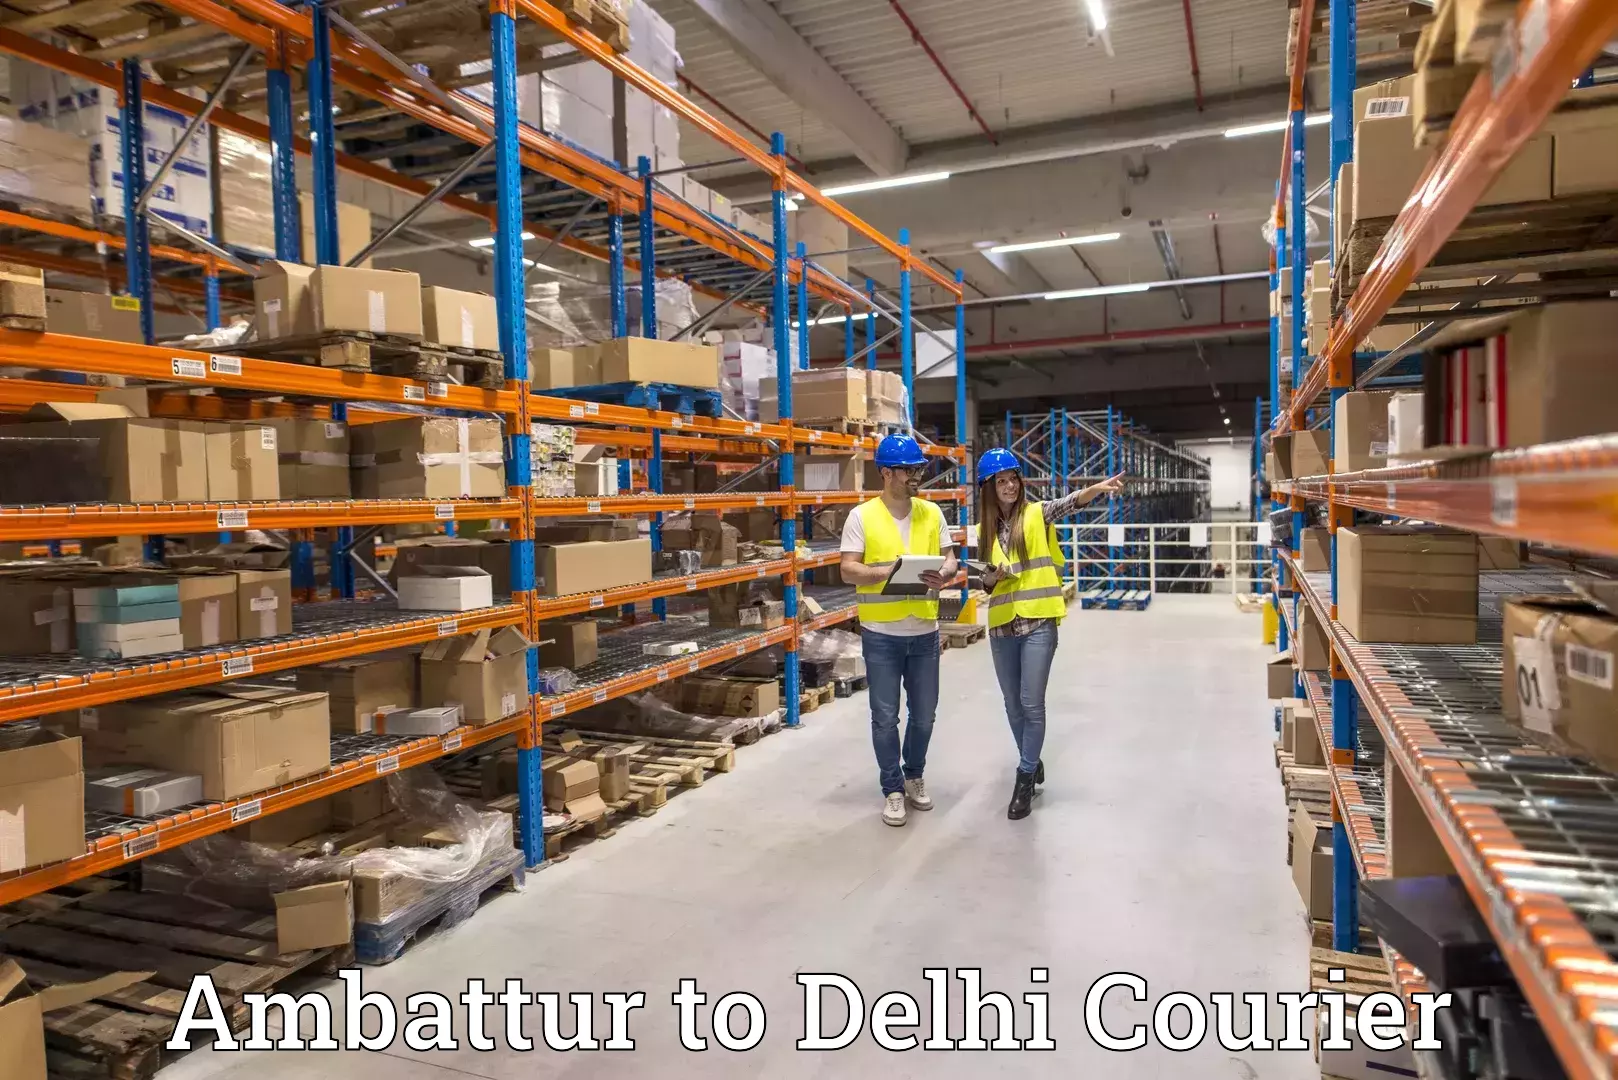 International courier networks Ambattur to NIT Delhi